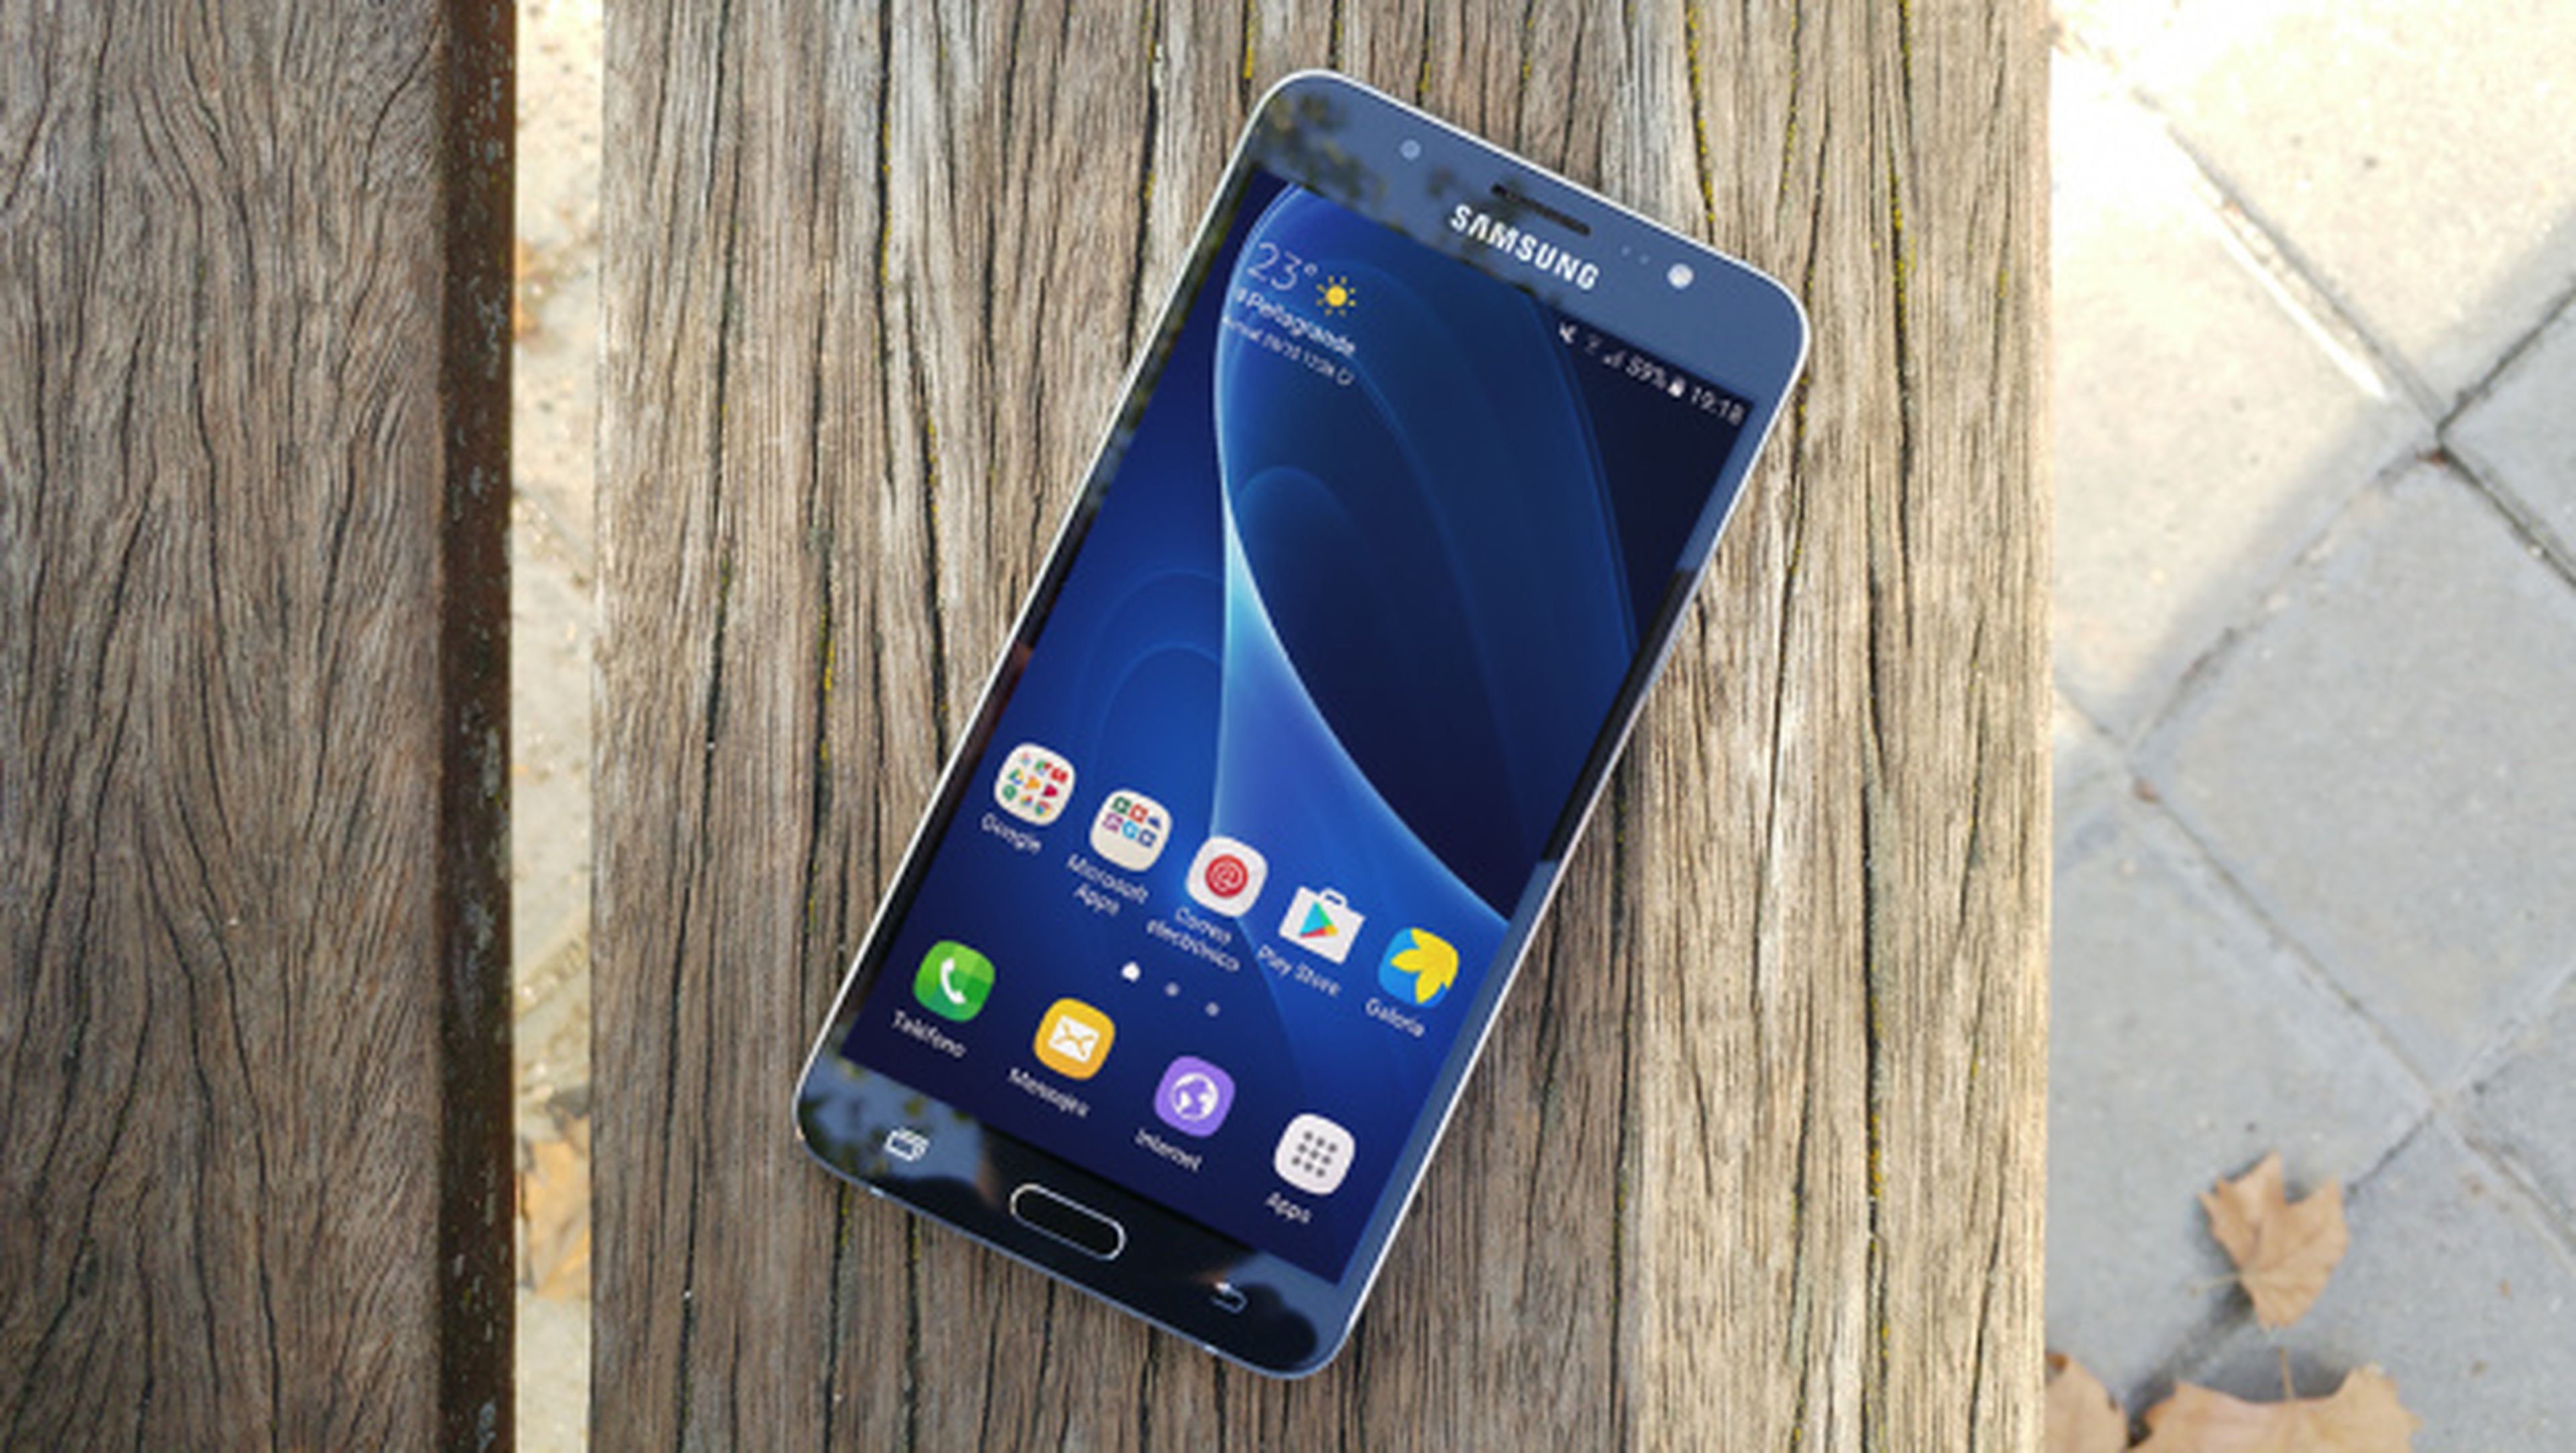 El diseño del nuevo Samsung Galaxy J7, filtrado.